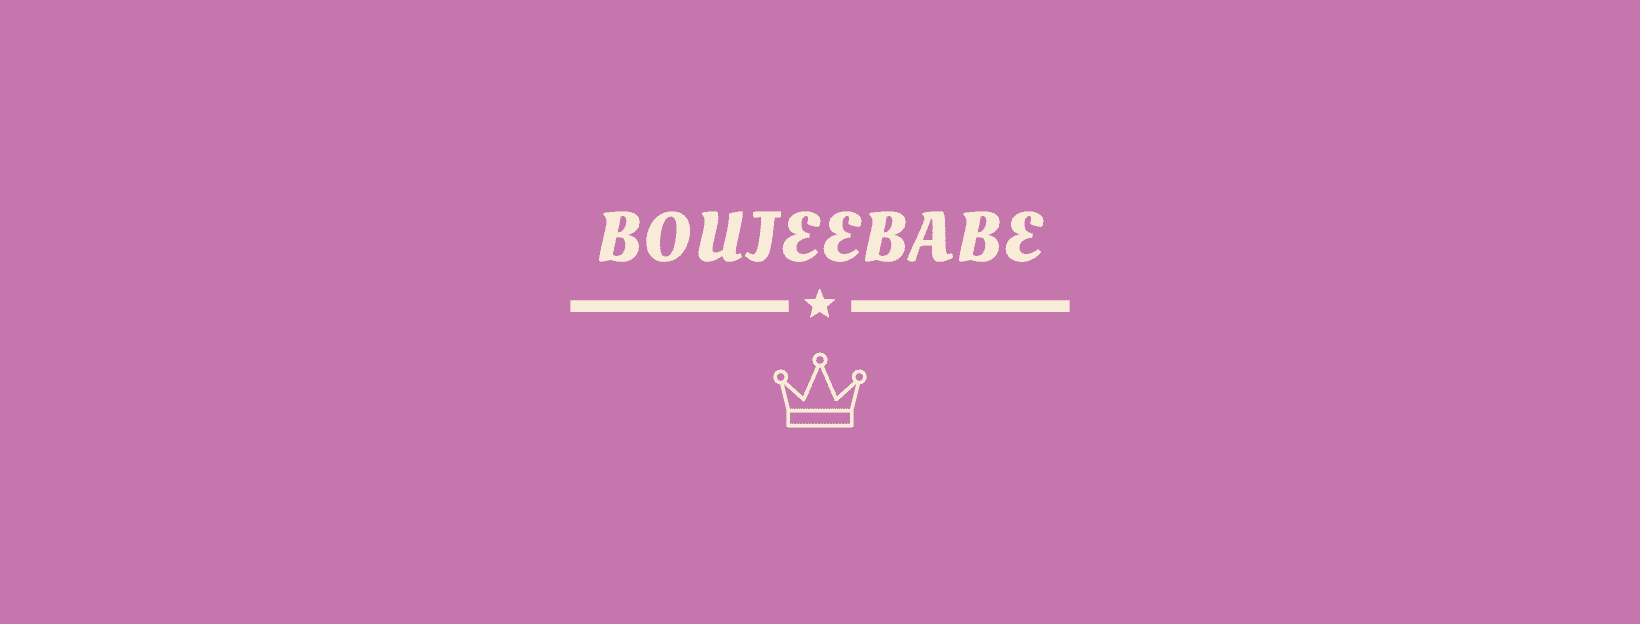 BoujeeBabe Cosmetics